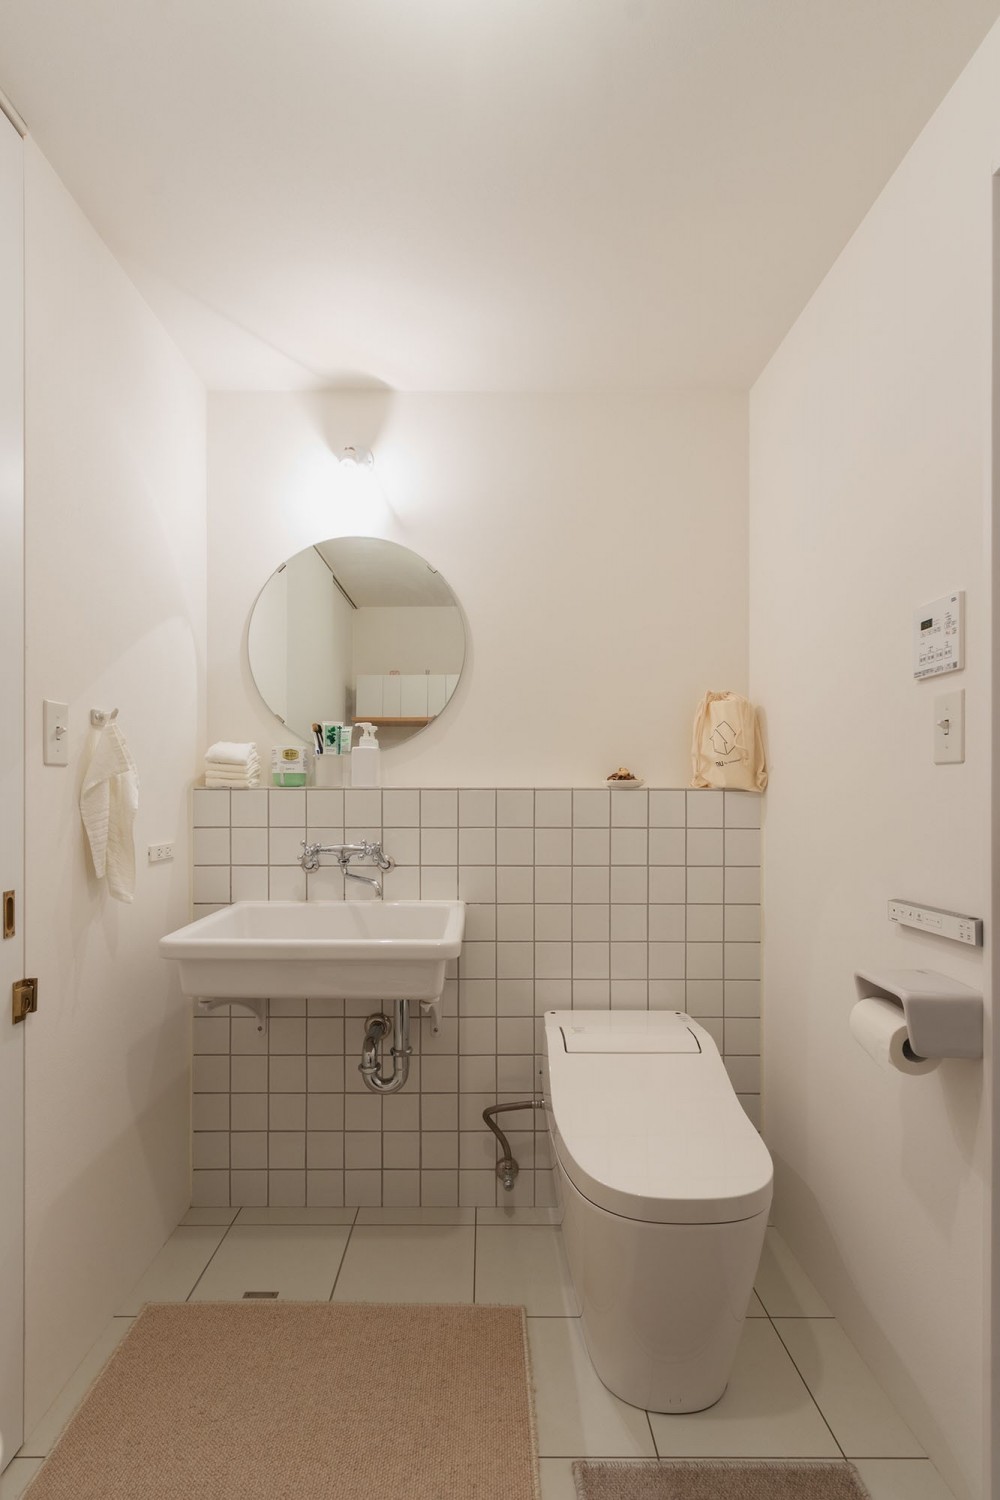 ピットリビングのある“わたしサイズ”の家 (洗面室は白で統一された清潔感のあるインテリアに。)